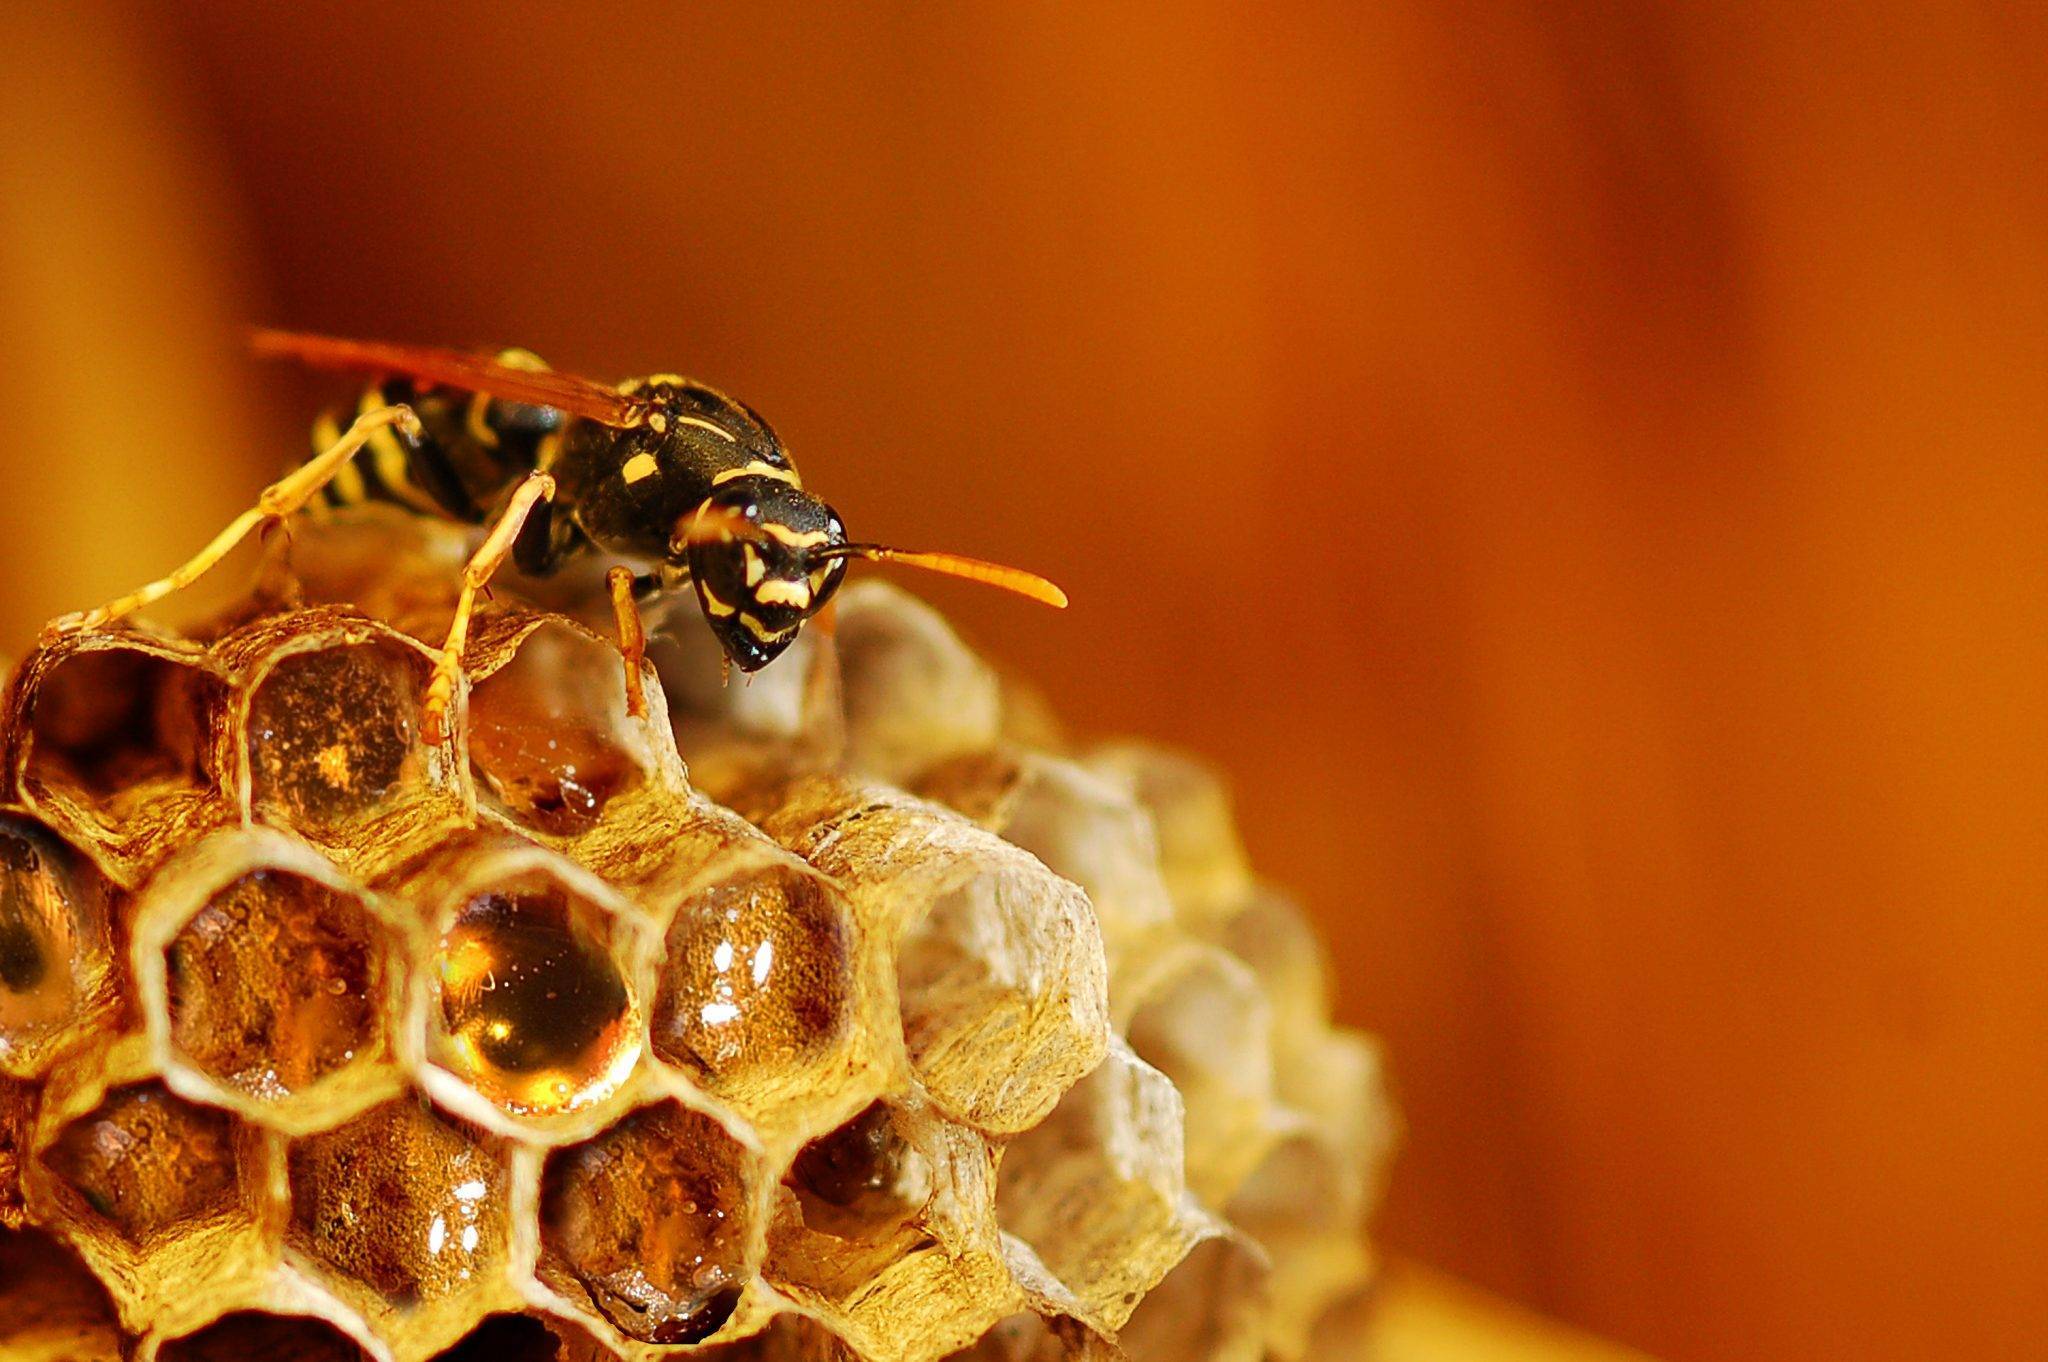 Осиный мед и его особенности. собирают ли осы мед?